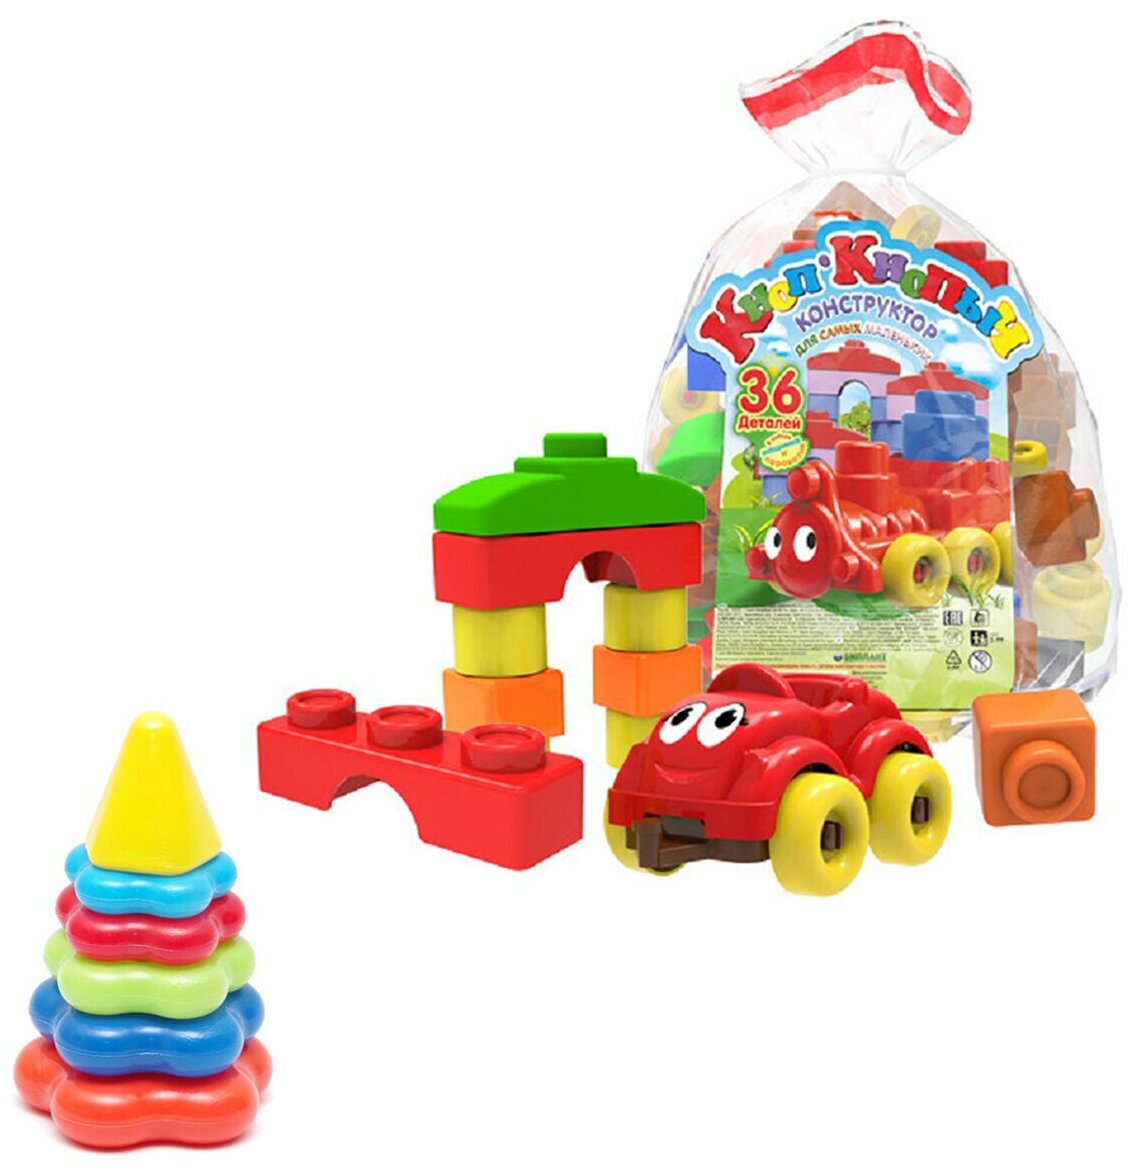 Развивающие игрушки для малышей набор Пирамидка детская малая + Конструктор "Кноп-Кнопыч" 36 дет.